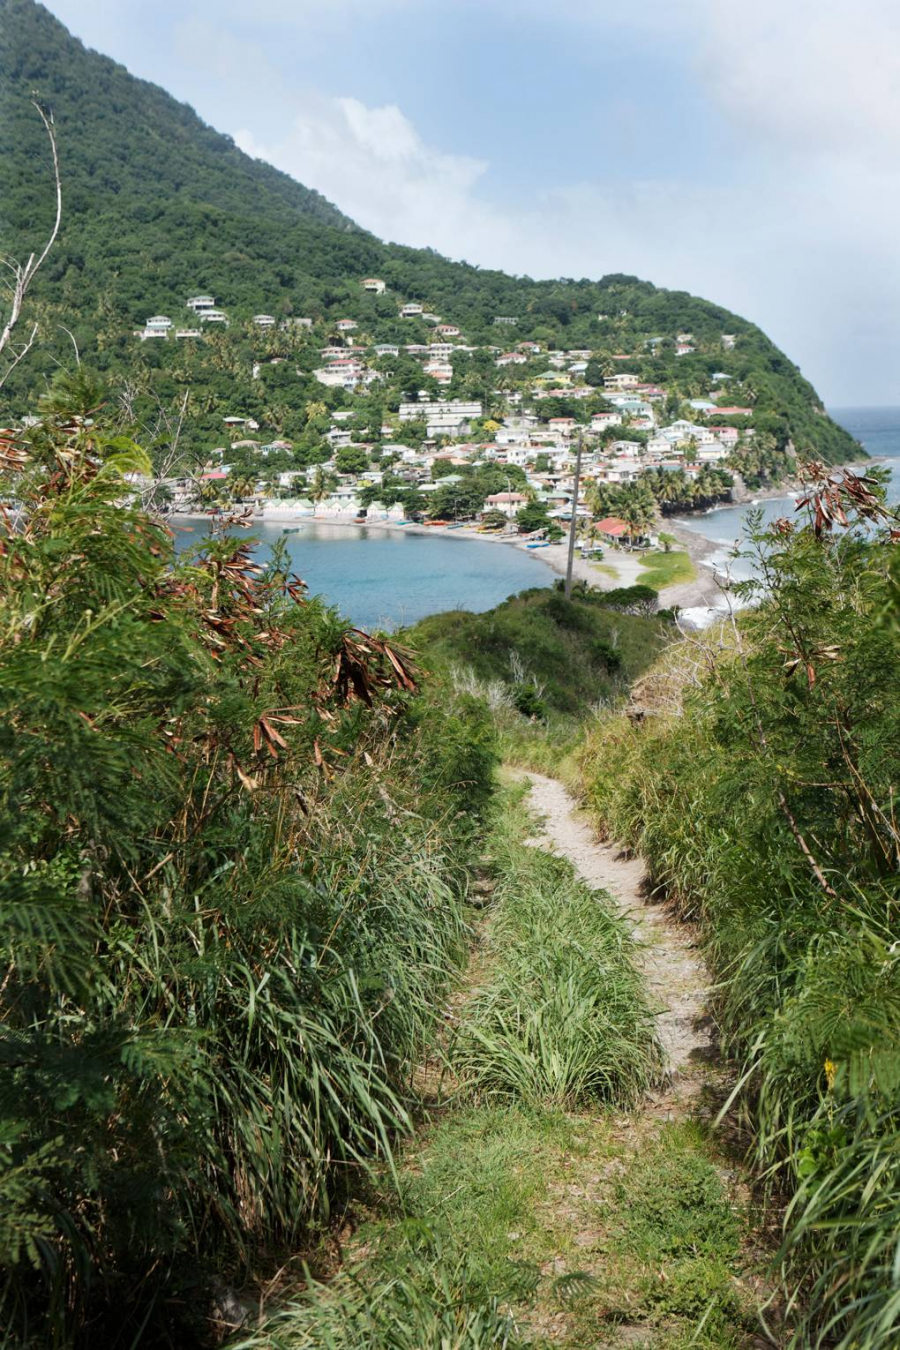 Như một viên đá quý thô sơ chưa được mài giũa nhiều, Dominica đang được tái thiết để chào đón lại du khách như một điểm đến cho những người thích phiêu lưu sinh thái.